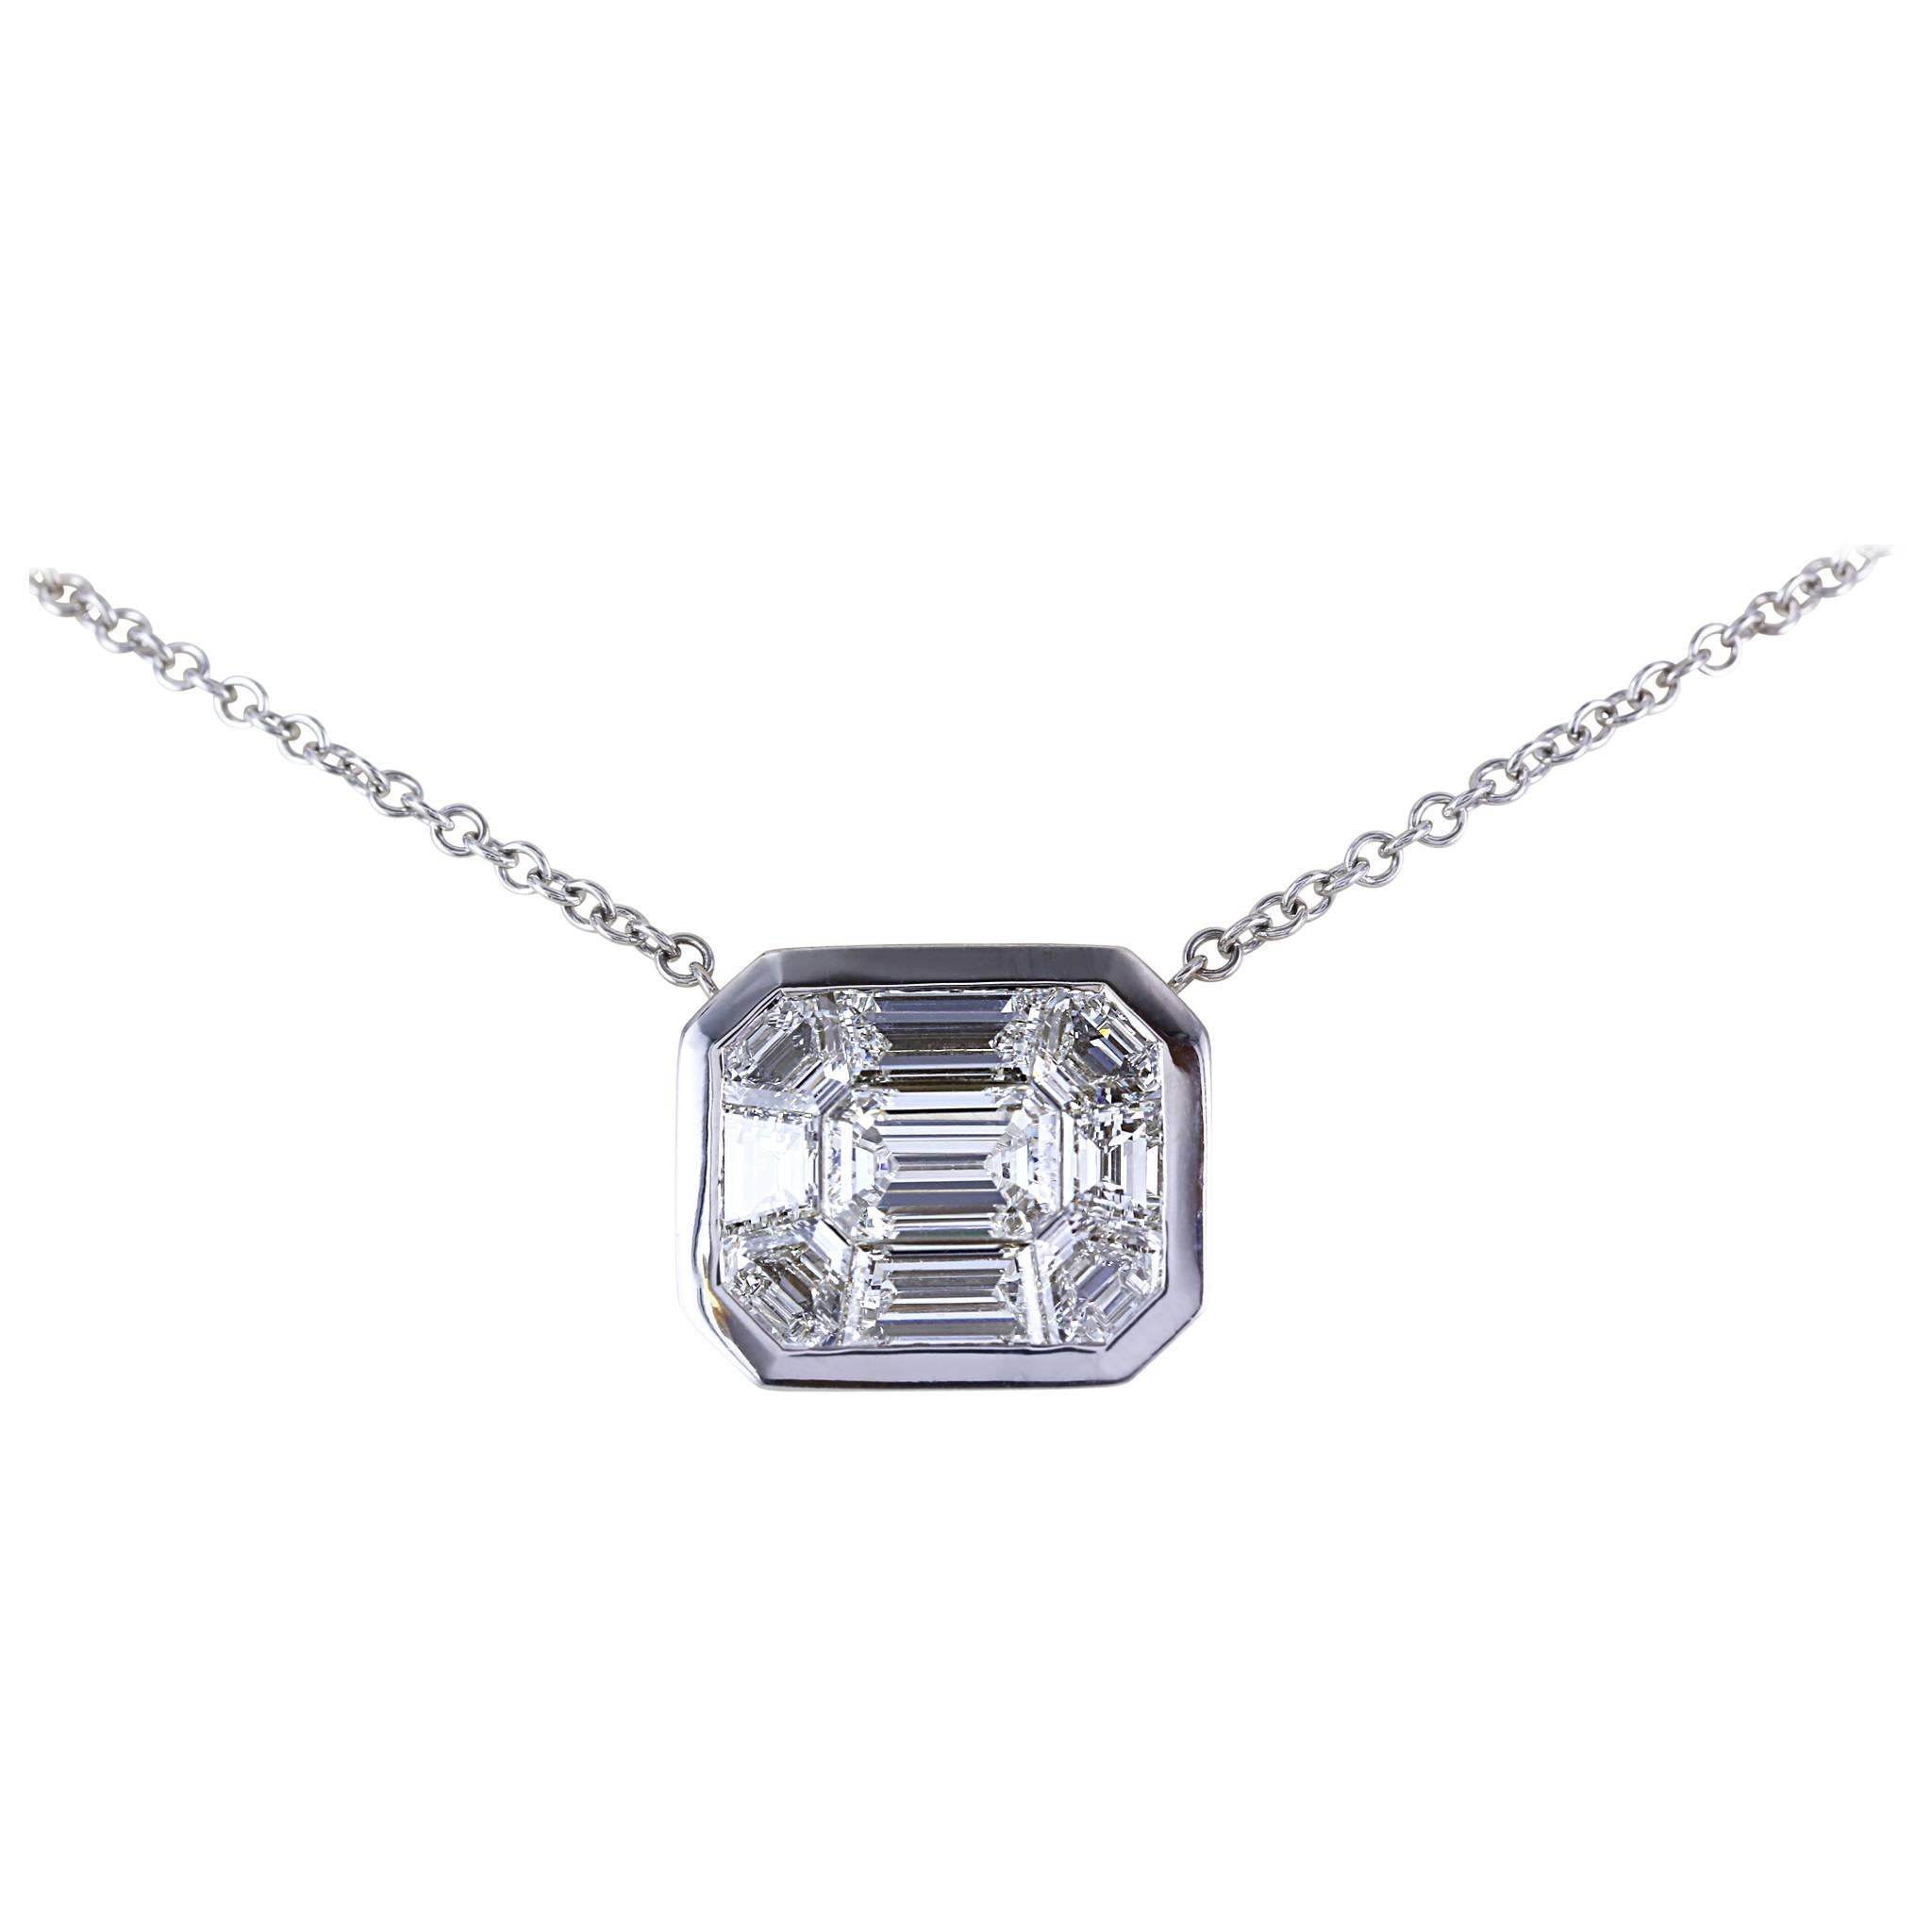 2.66 Carat Diamond Pendant For Sale